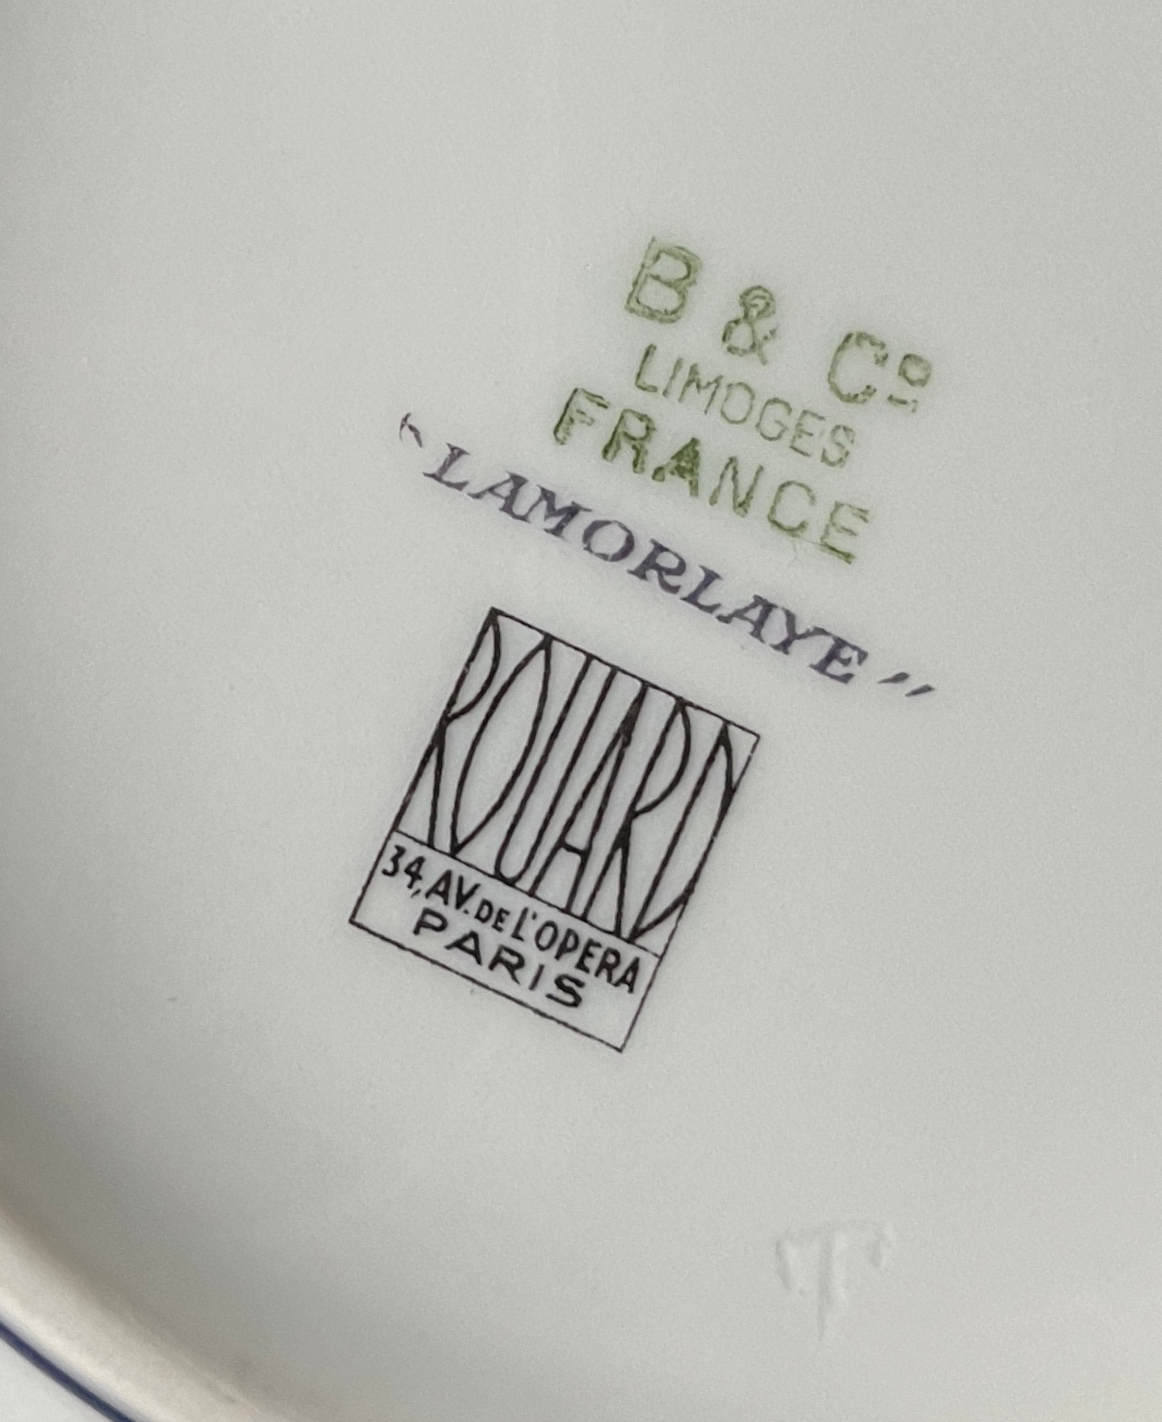 Limoges Porcelain Tea Set by Rouard and Bernardaud